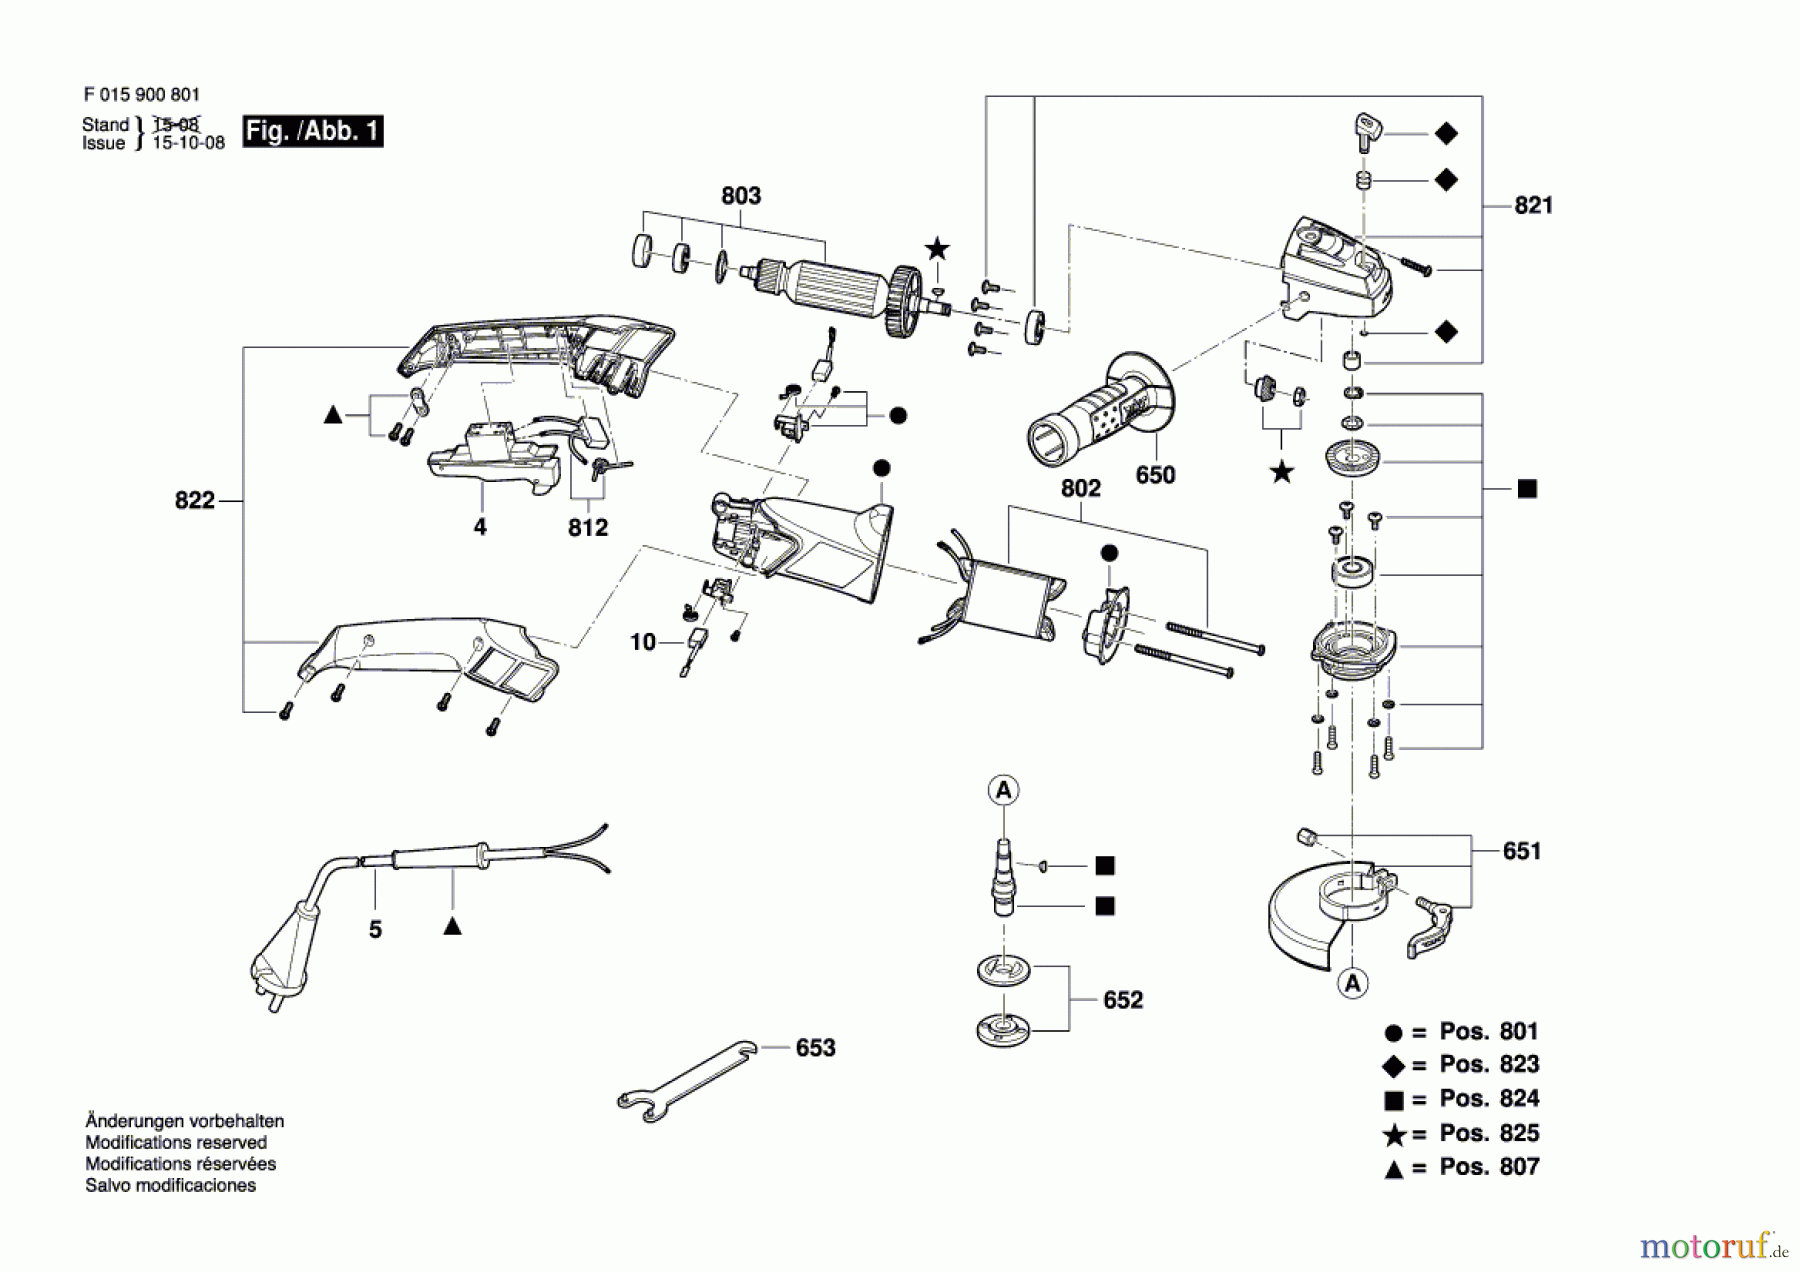  Bosch Werkzeug Pw-Winkelschleifer 9008 Seite 1